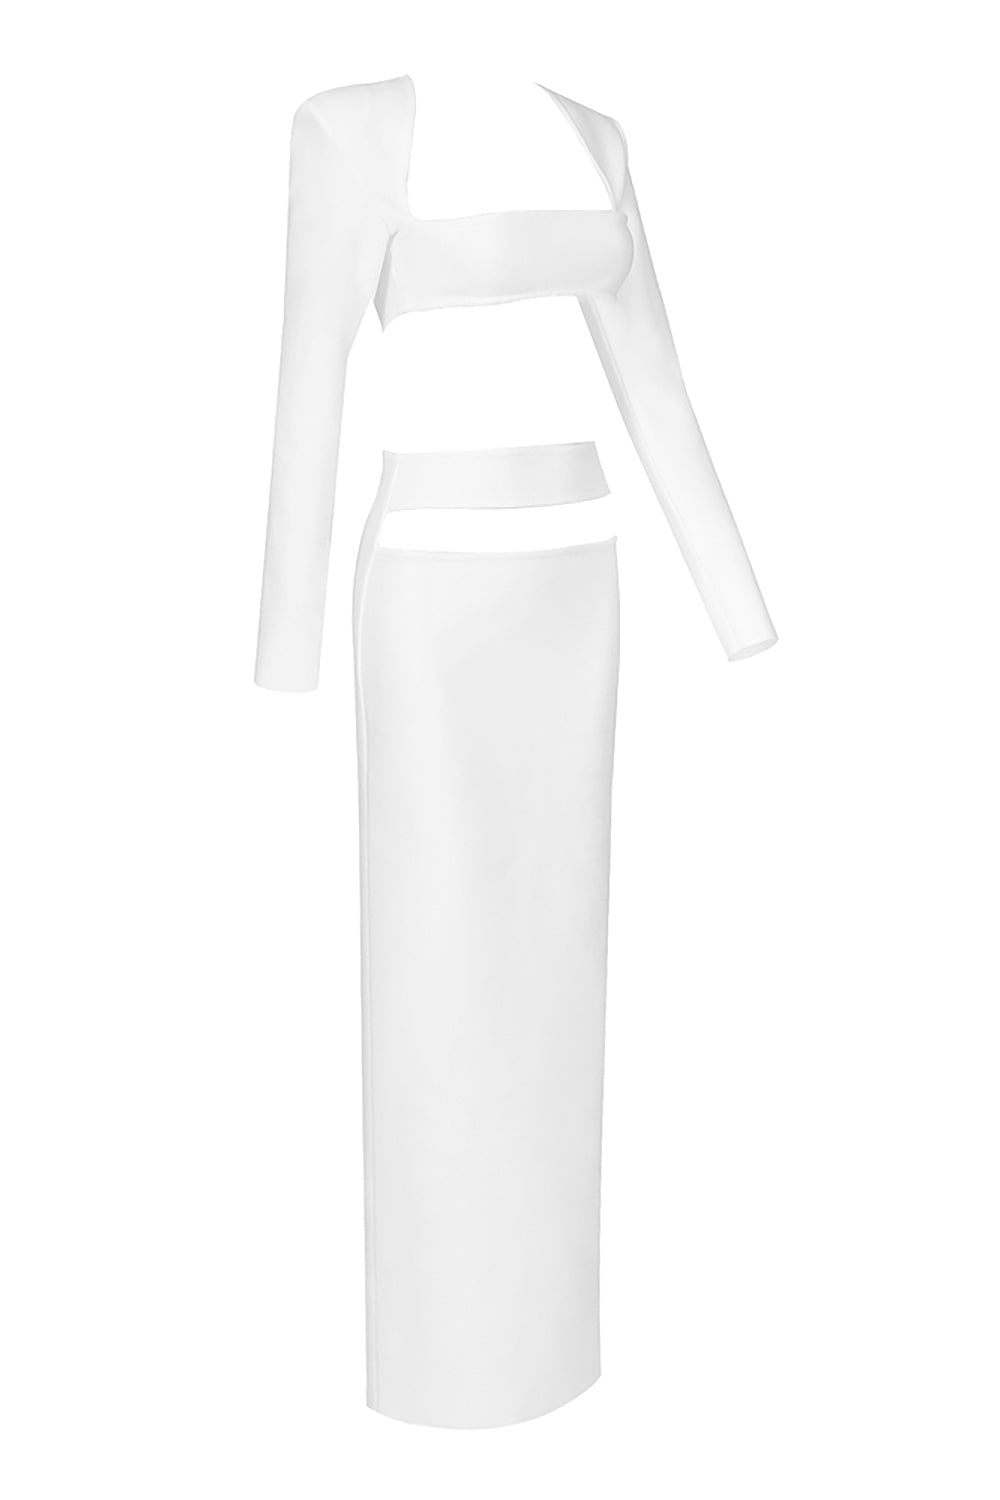 Faldas largas blancas de manga larga con ombligo recortado y cintura alta